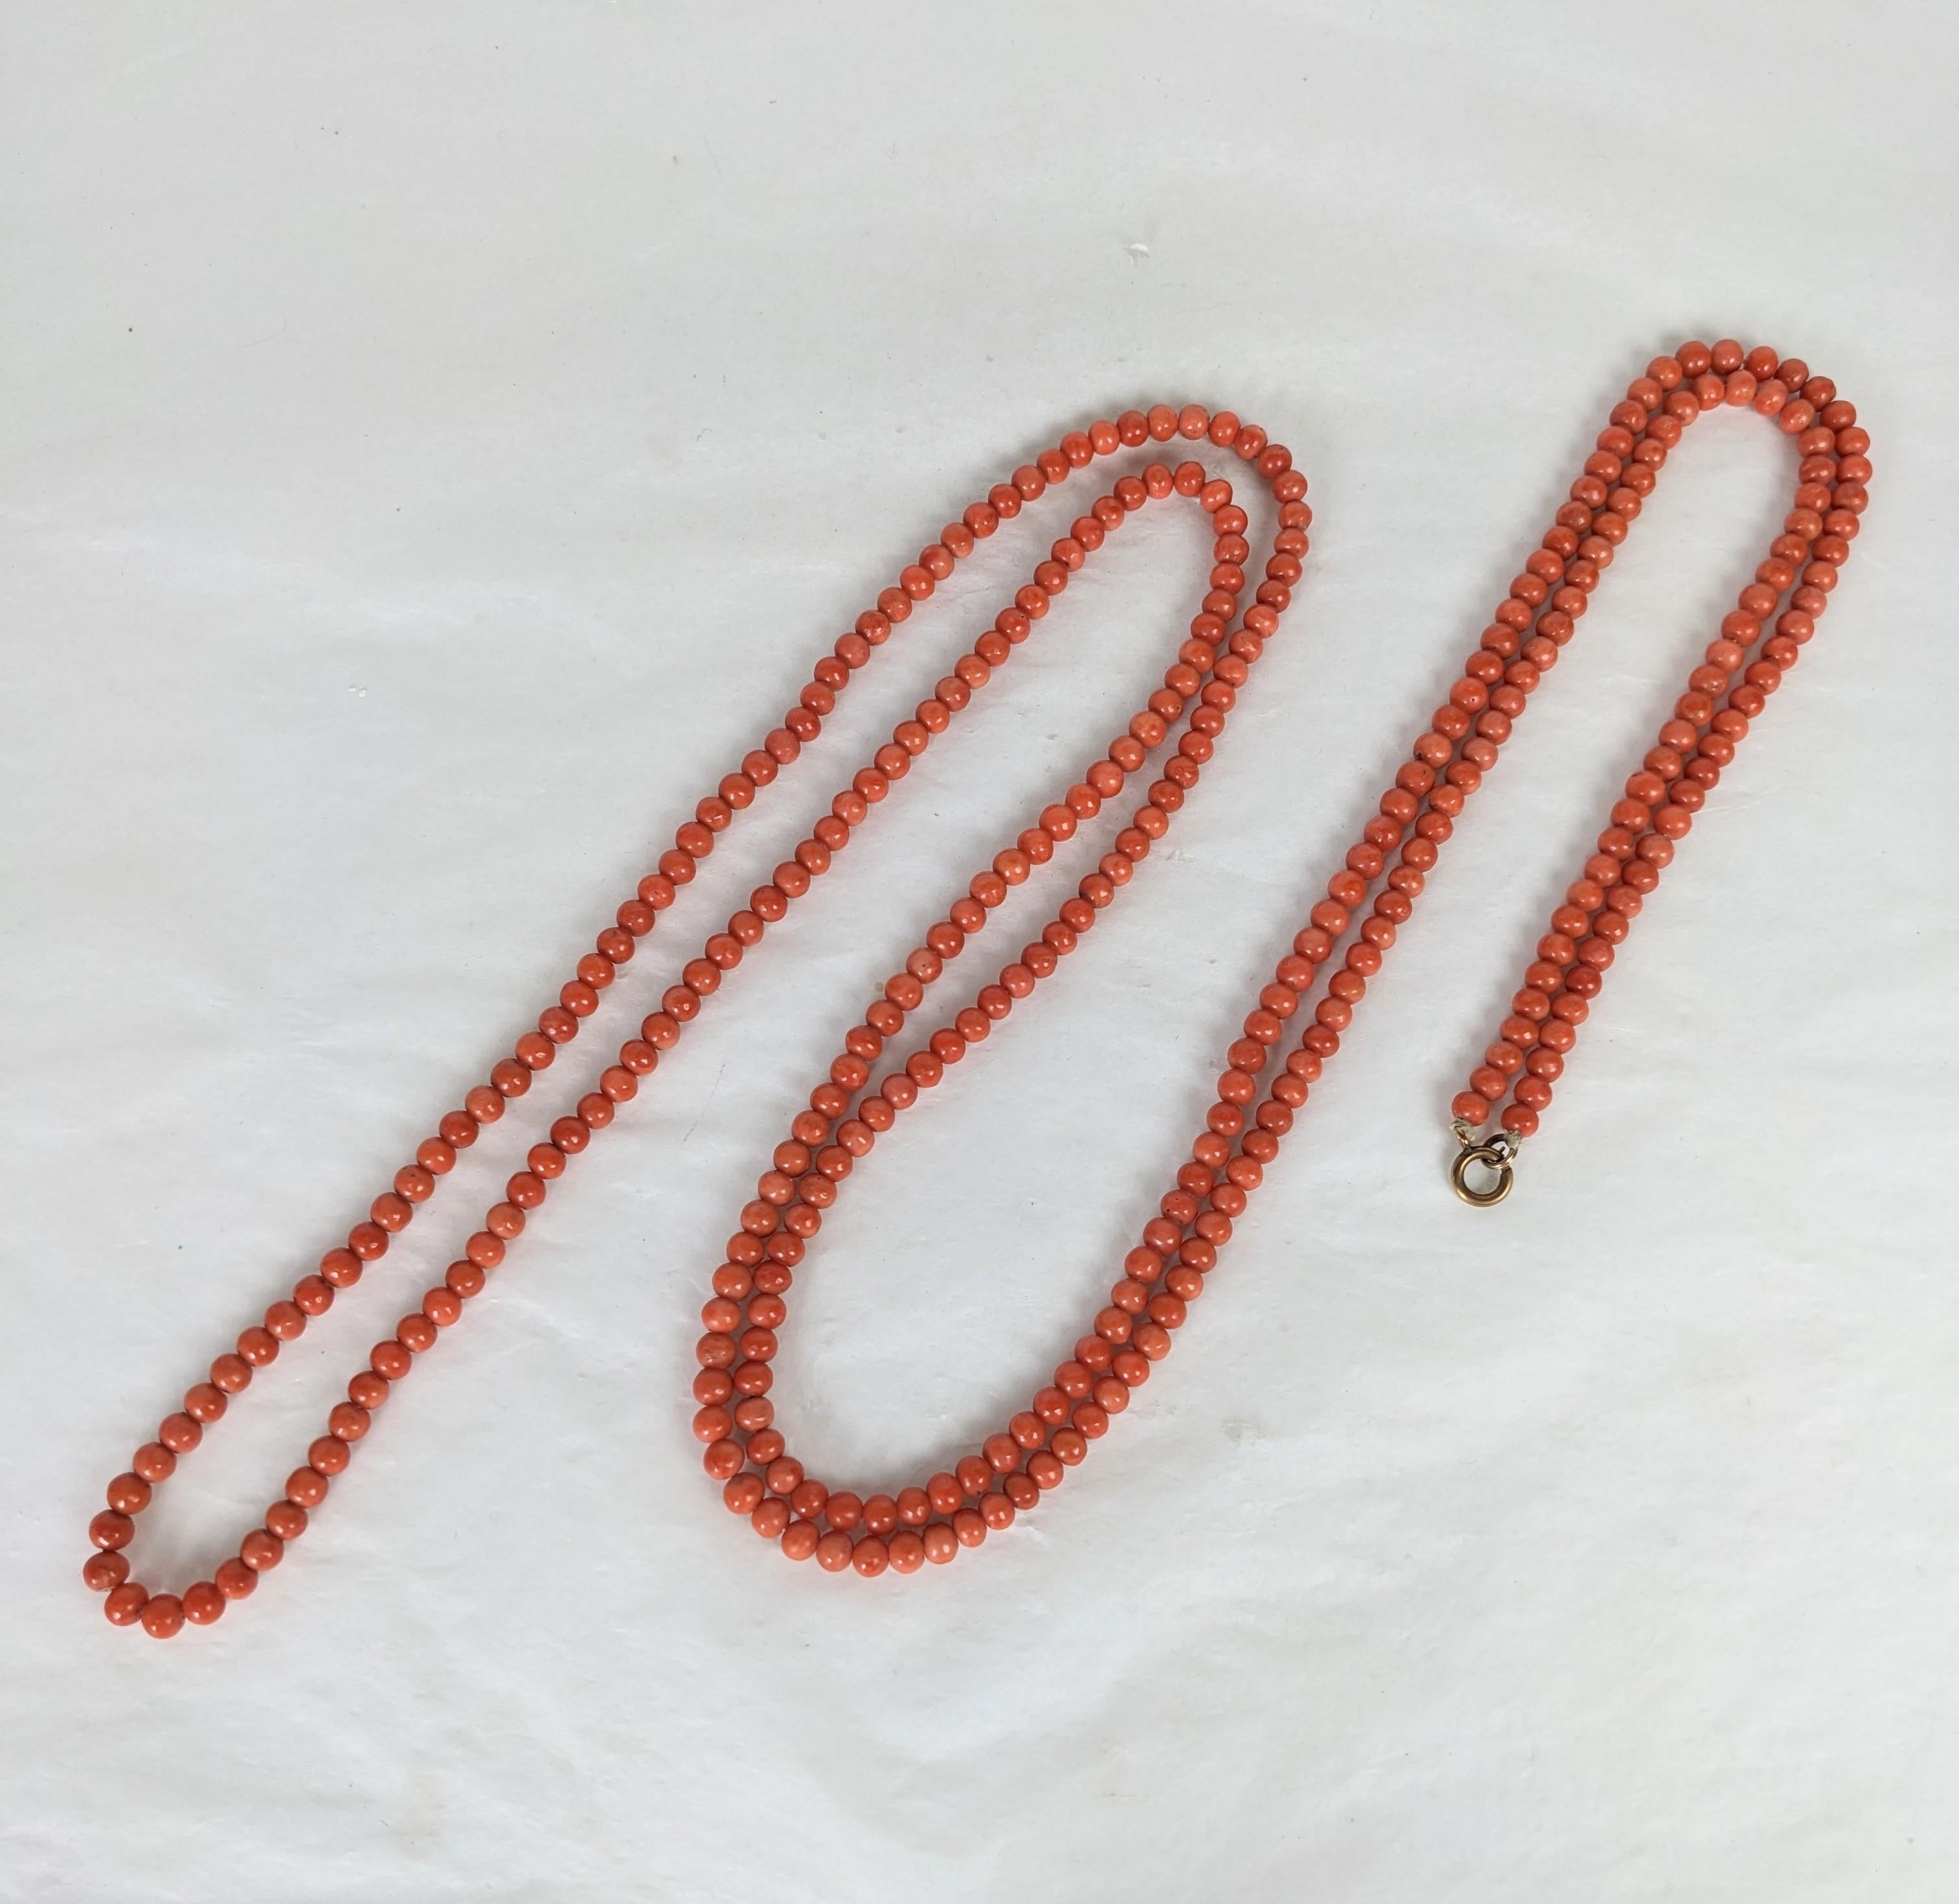 Super longues perles victoriennes en corail véritable non teinté de la fin du 19e siècle.  Magnifique couleur rouge-orange saumonée, rare longueur, extrêmement polyvalent pour envelopper ou utiliser plusieurs fois comme un bracelet. Italie, 19e